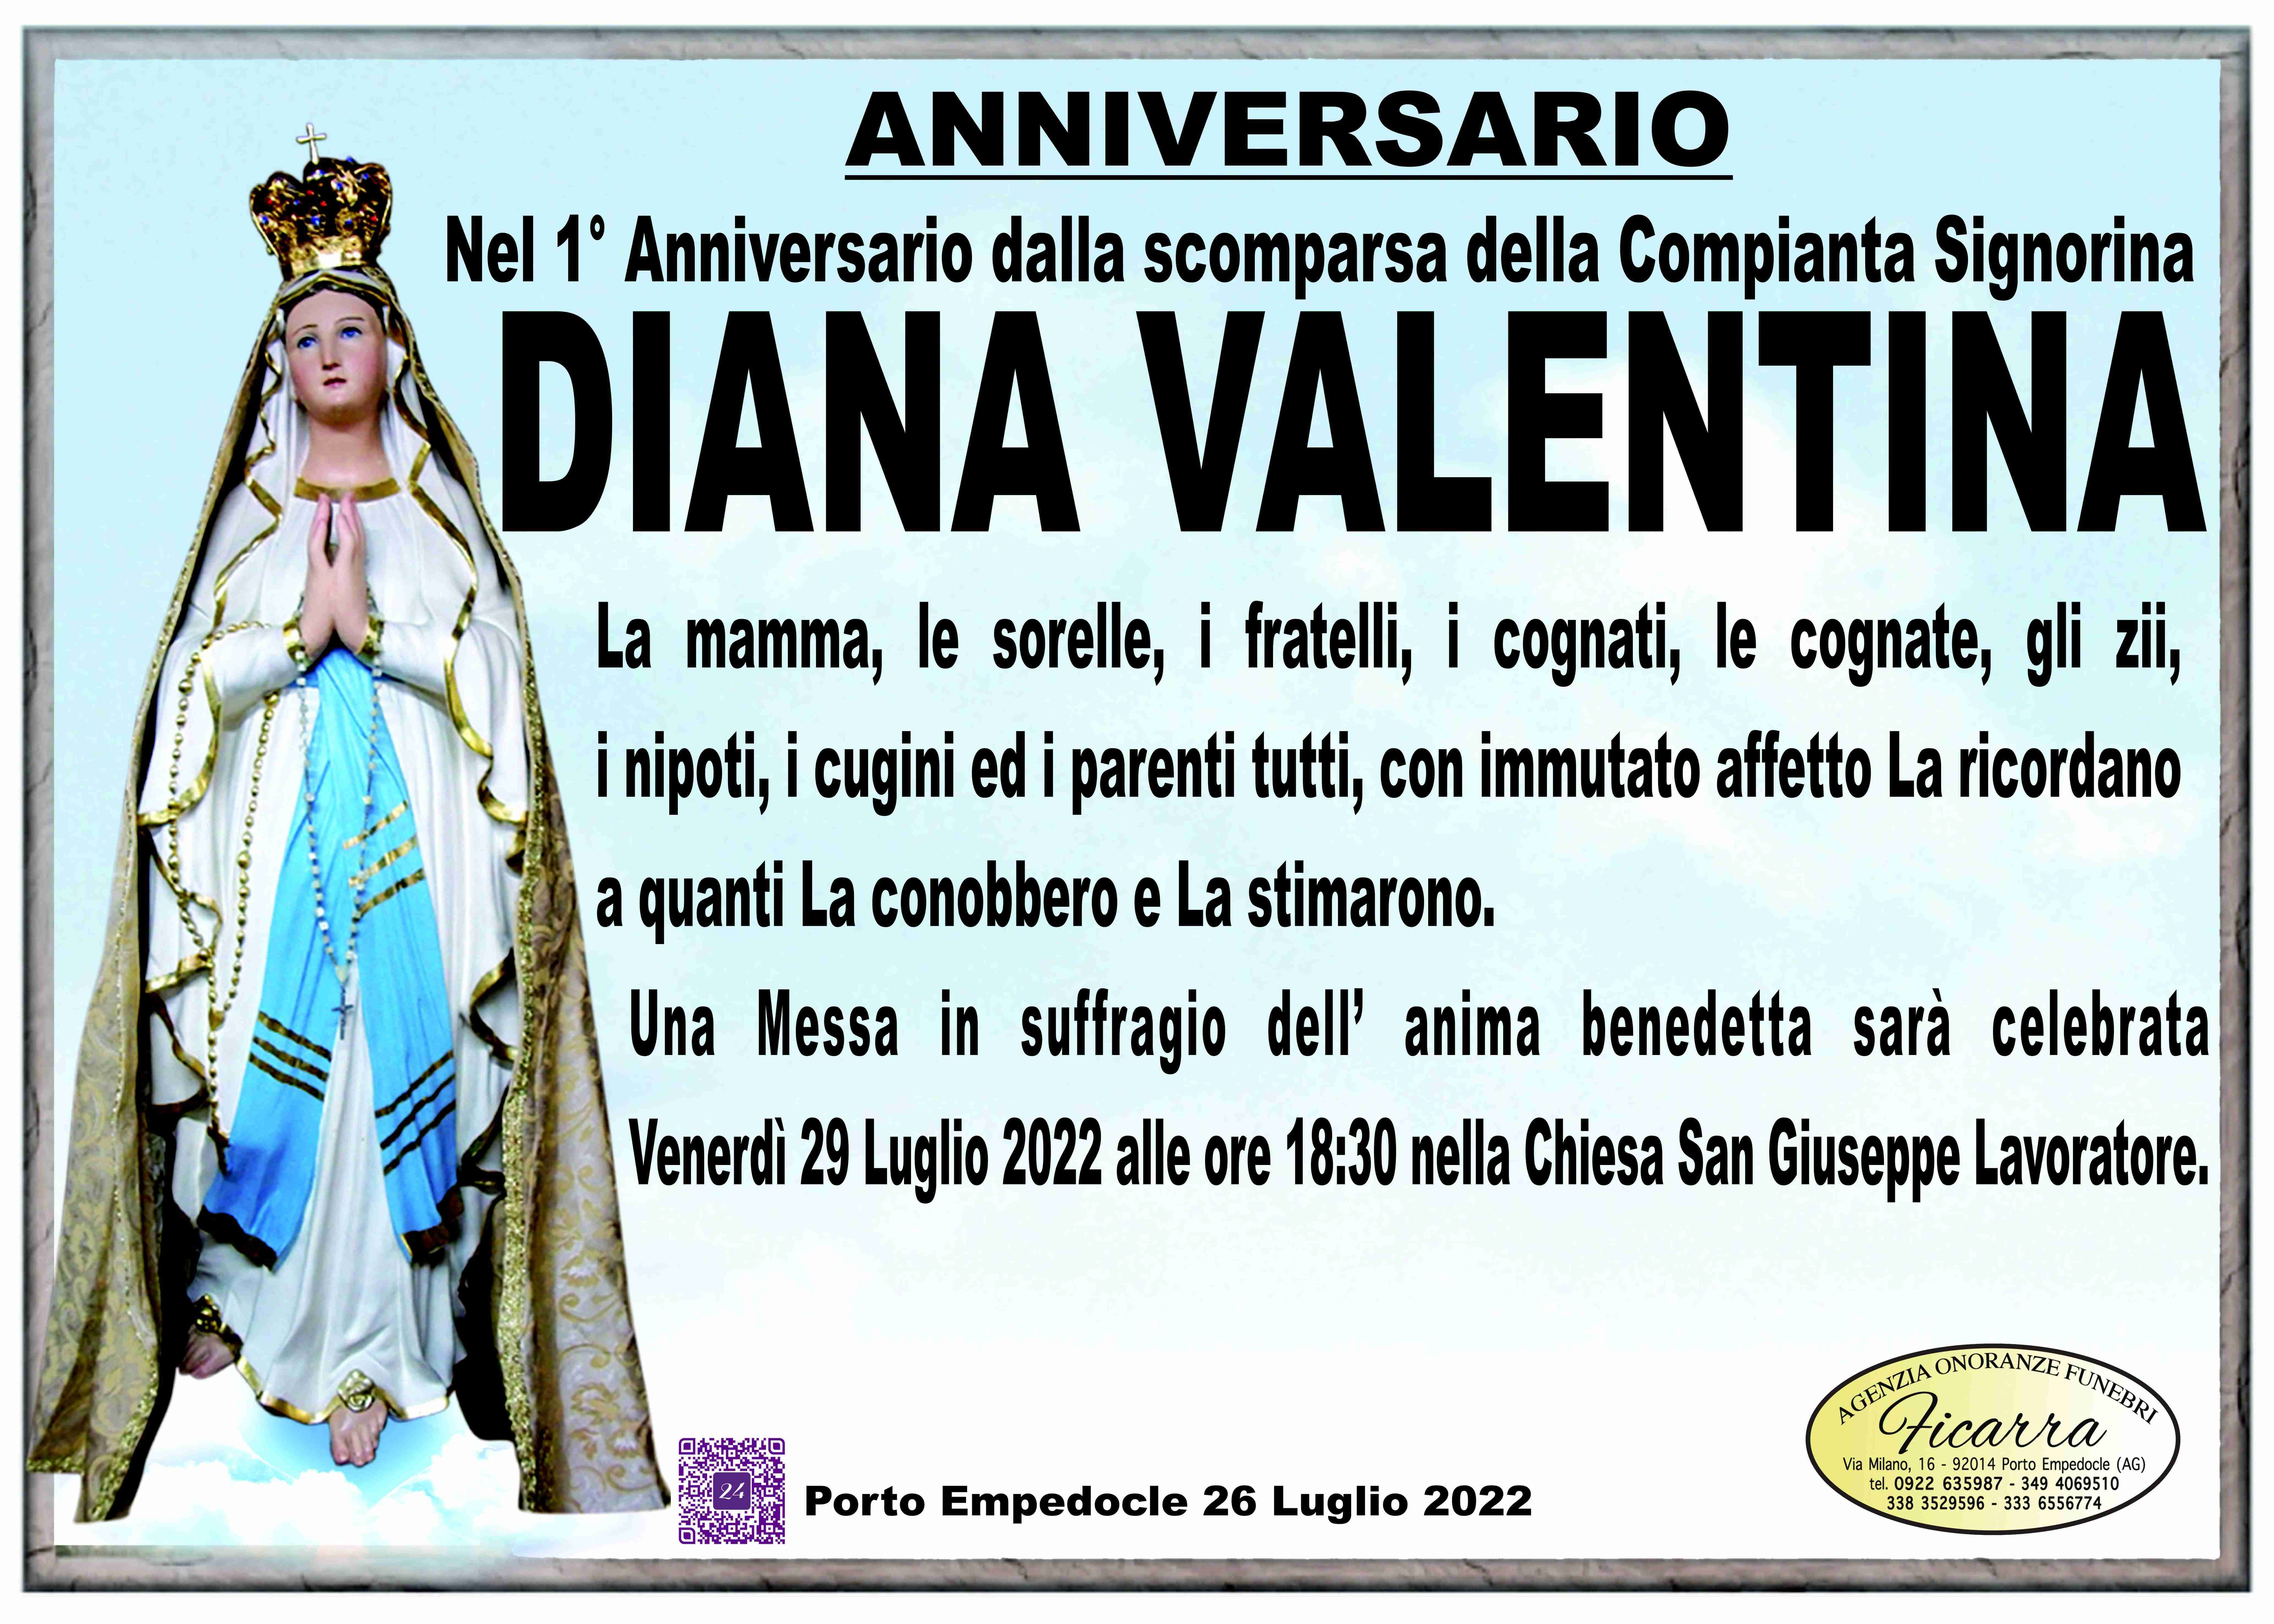 Valentina Diana